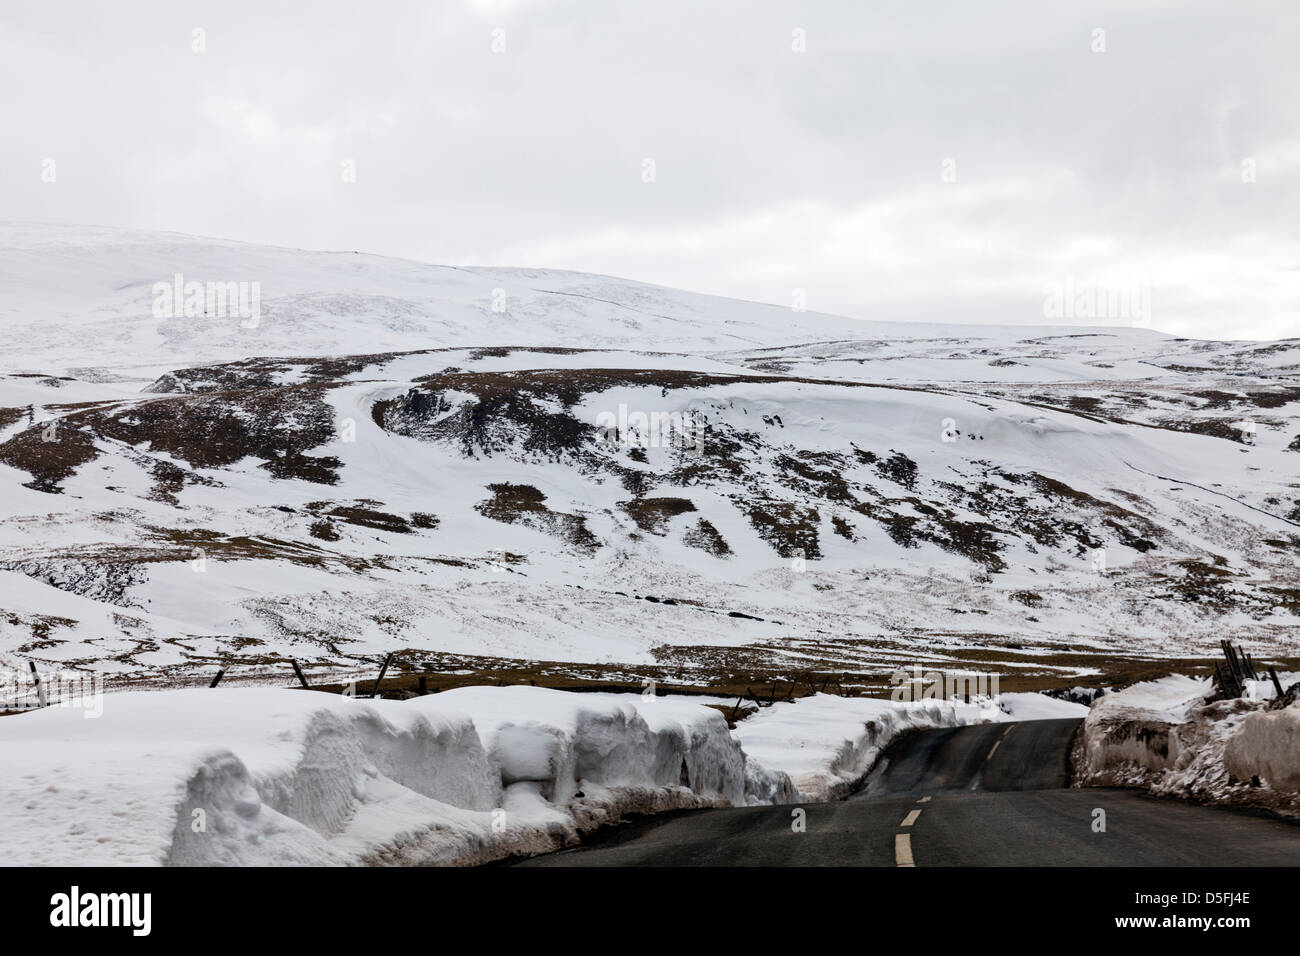 Le Yorkshire, UK. 1er avril 2013. La neige et les glaçons qui dominent toujours le paysage des Yorkshire Dales. Les routes sont encore peu praticable dans les lieux en raison de la neige est poussée jusqu'à un côté qui commence à se détacher et tomber dans le road Crédit : Paul Thompson/Alamy Live News Banque D'Images